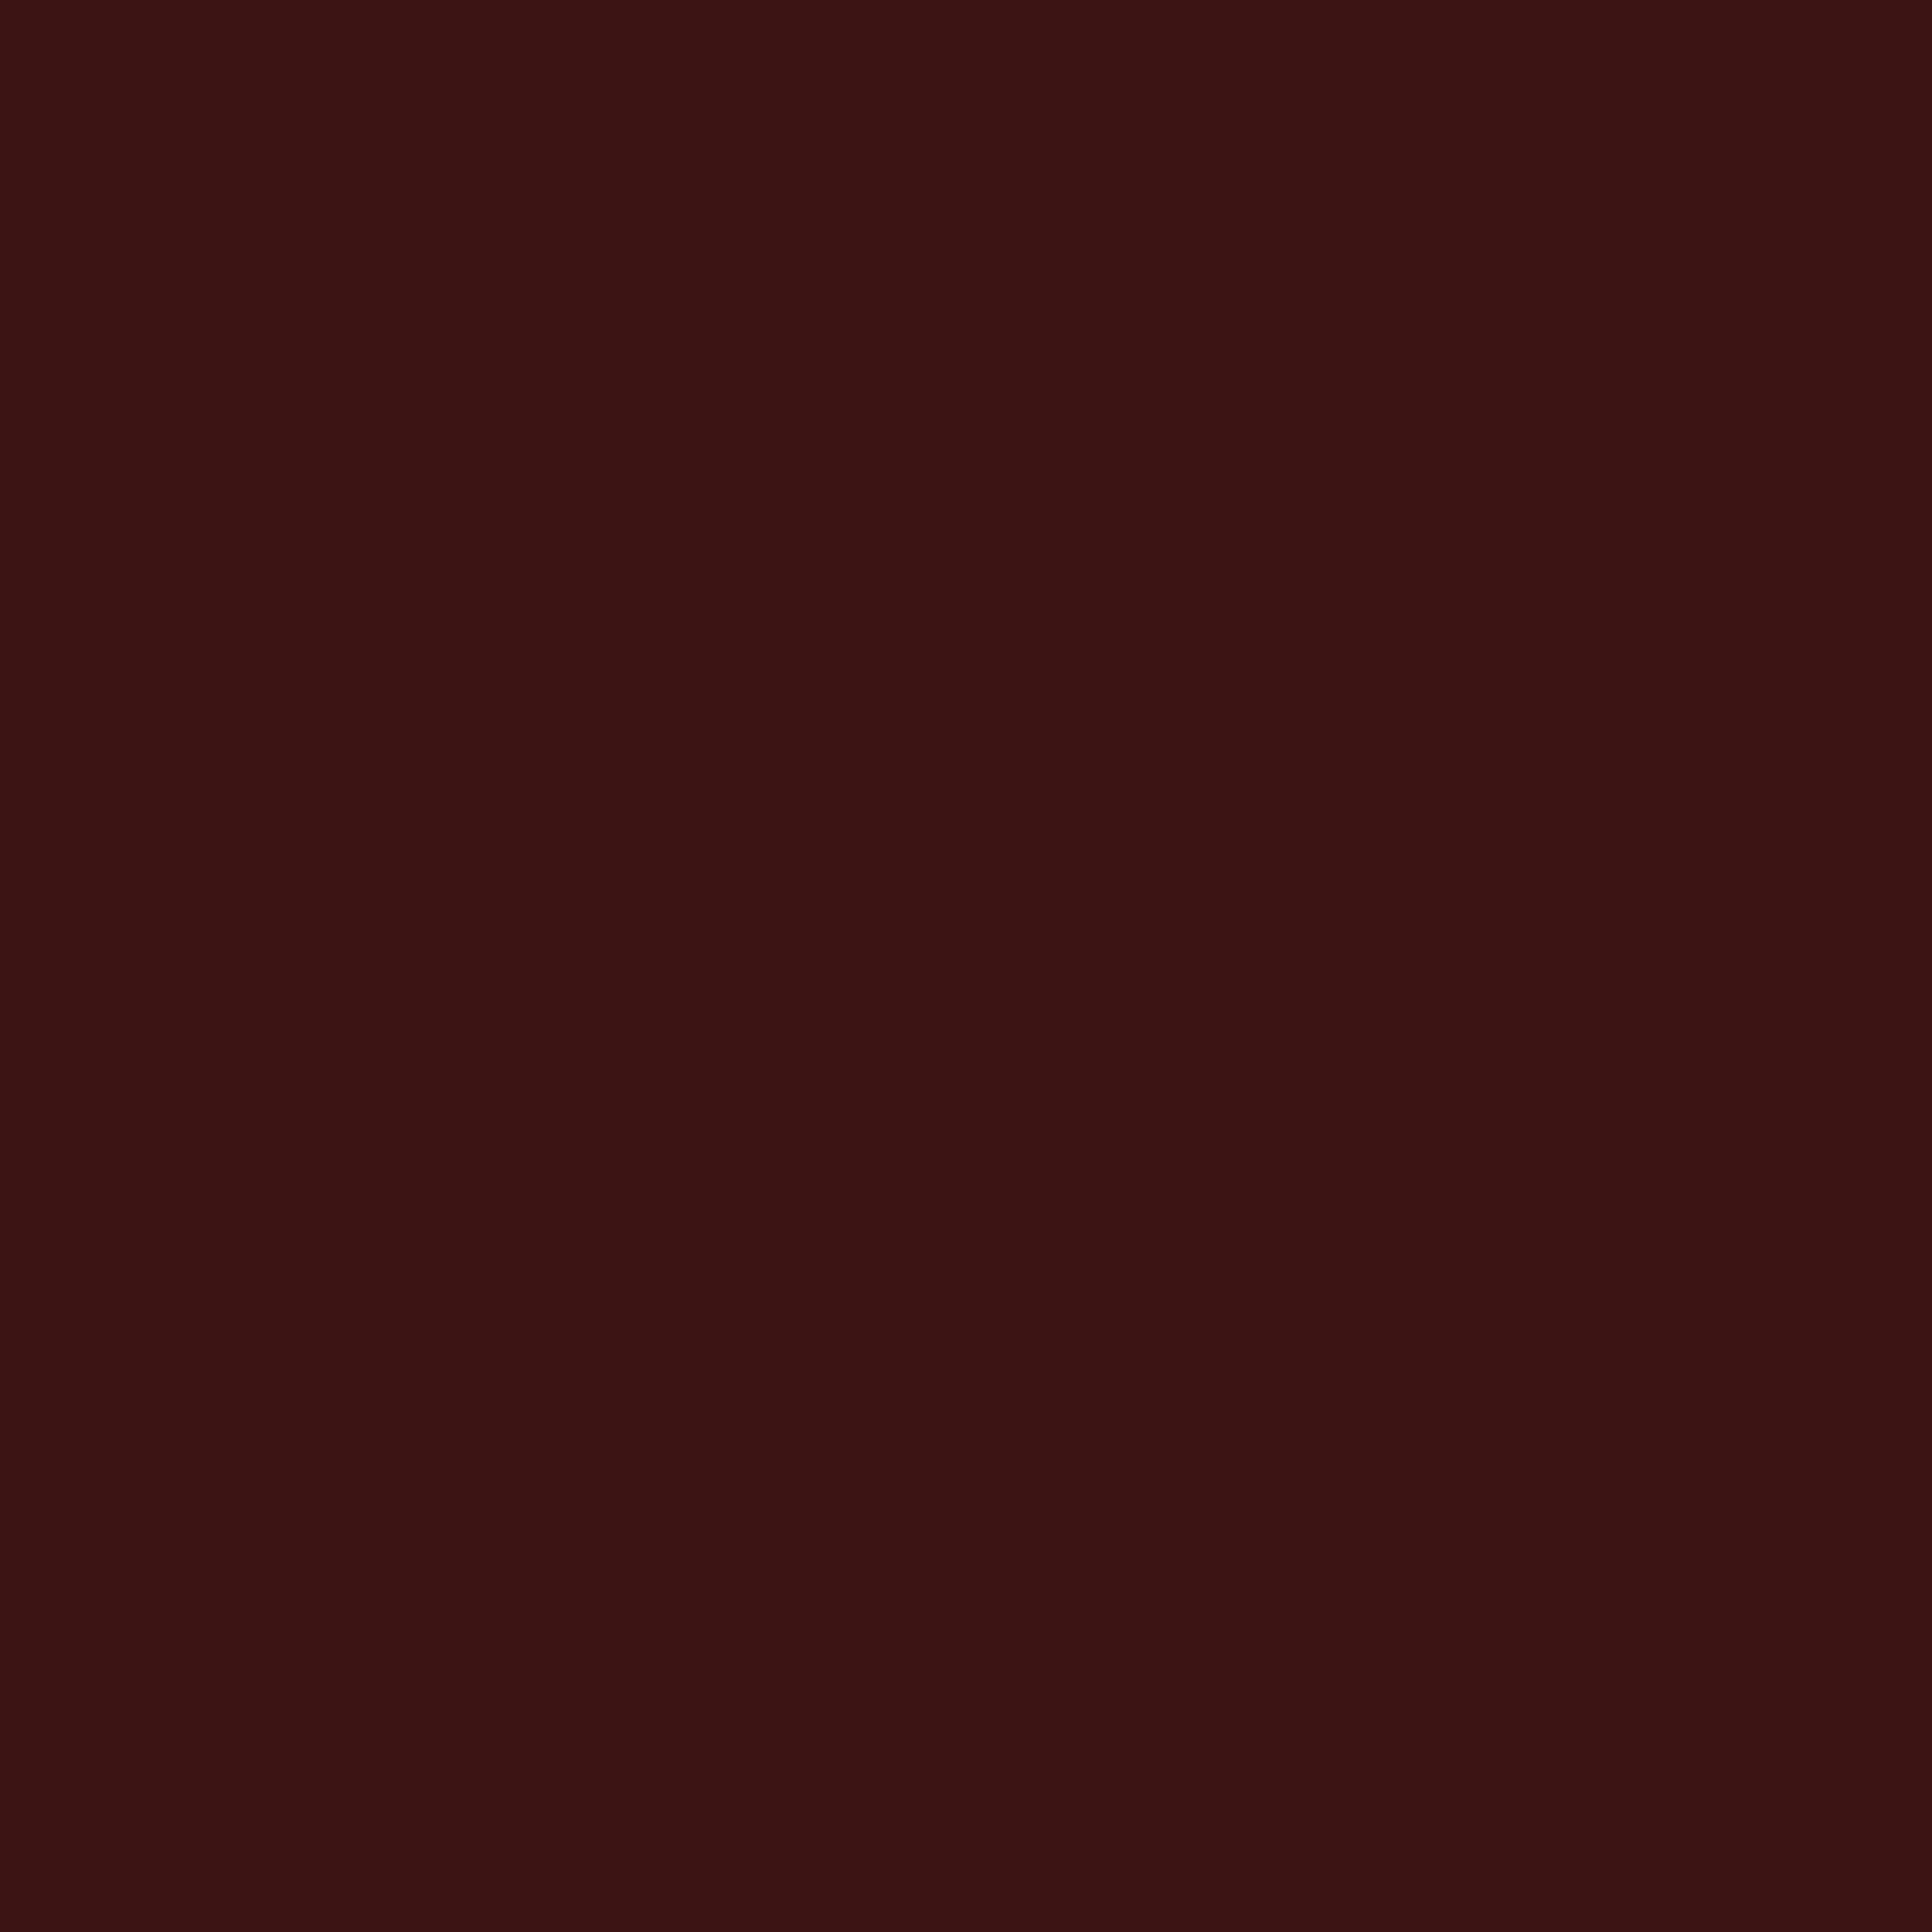 2048x2048 Dark Sienna Solid Color Background